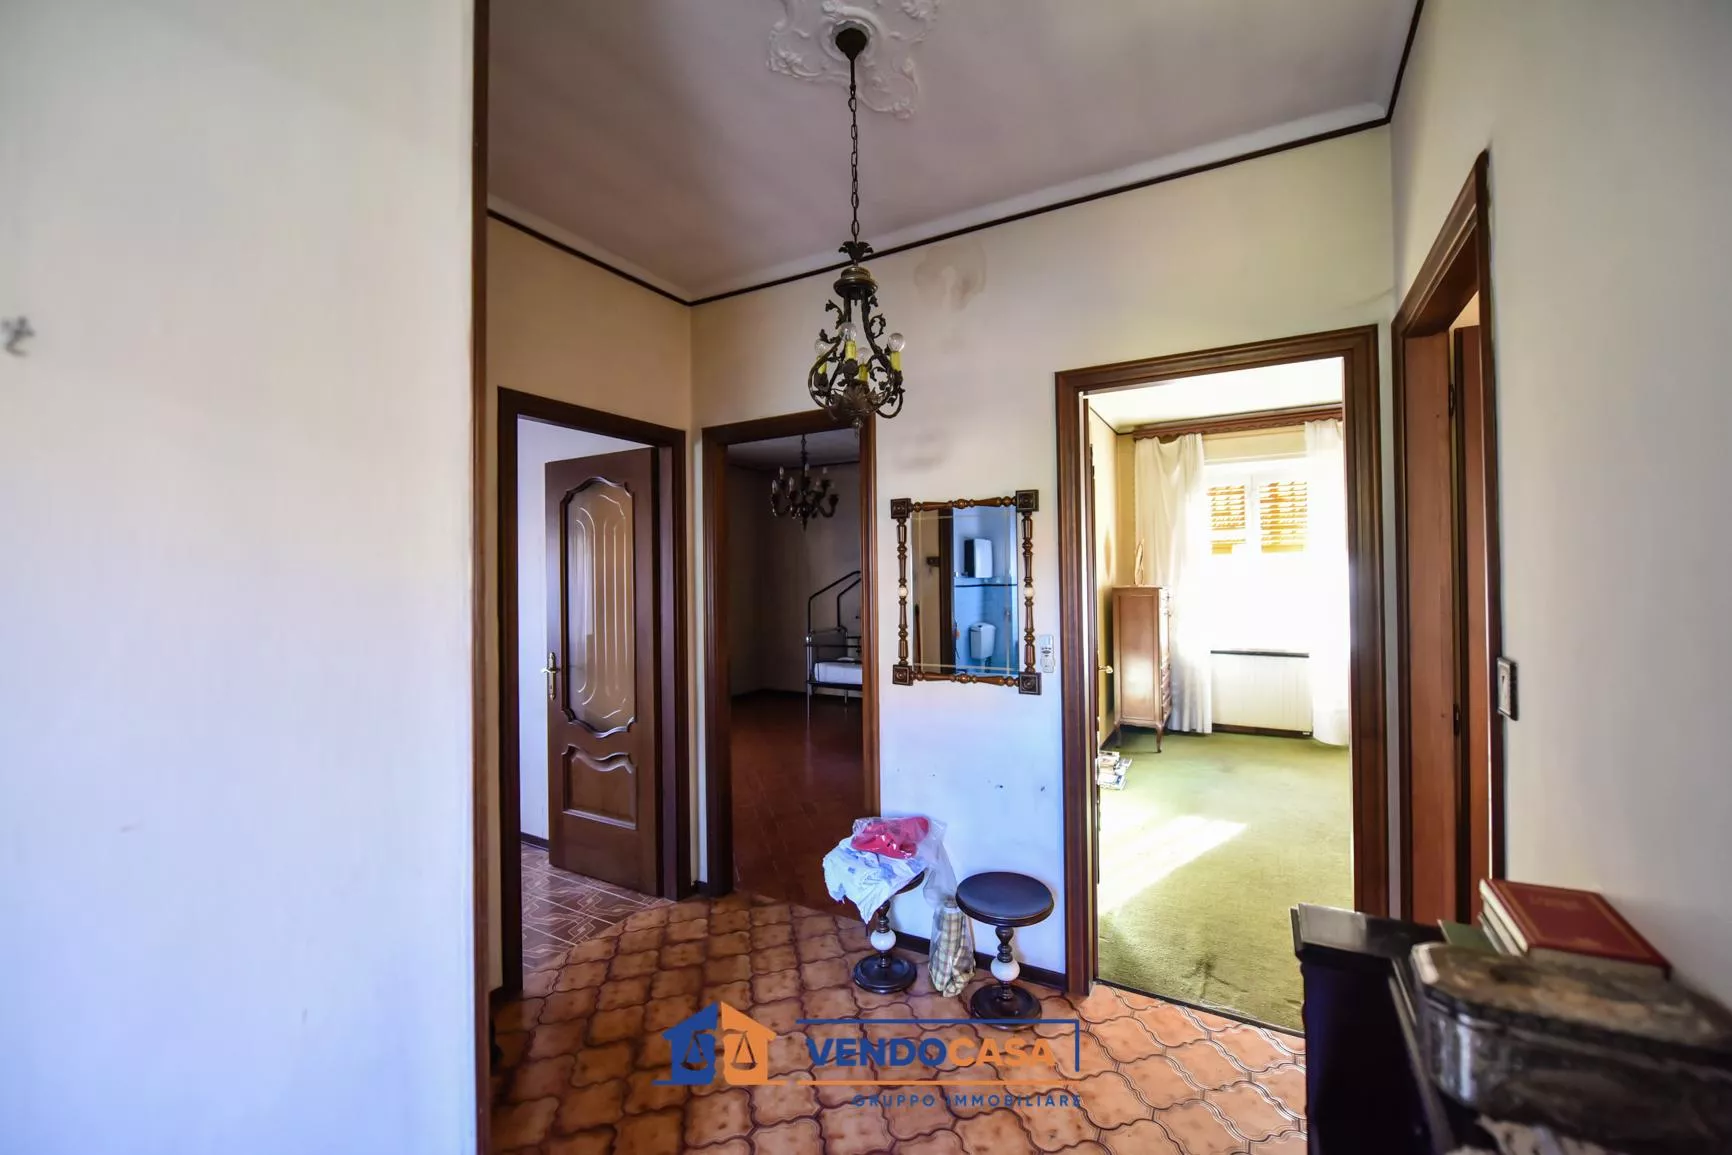 Immagine per Casa Indipendente in vendita a Nichelino via Giovanni Pascoli 6